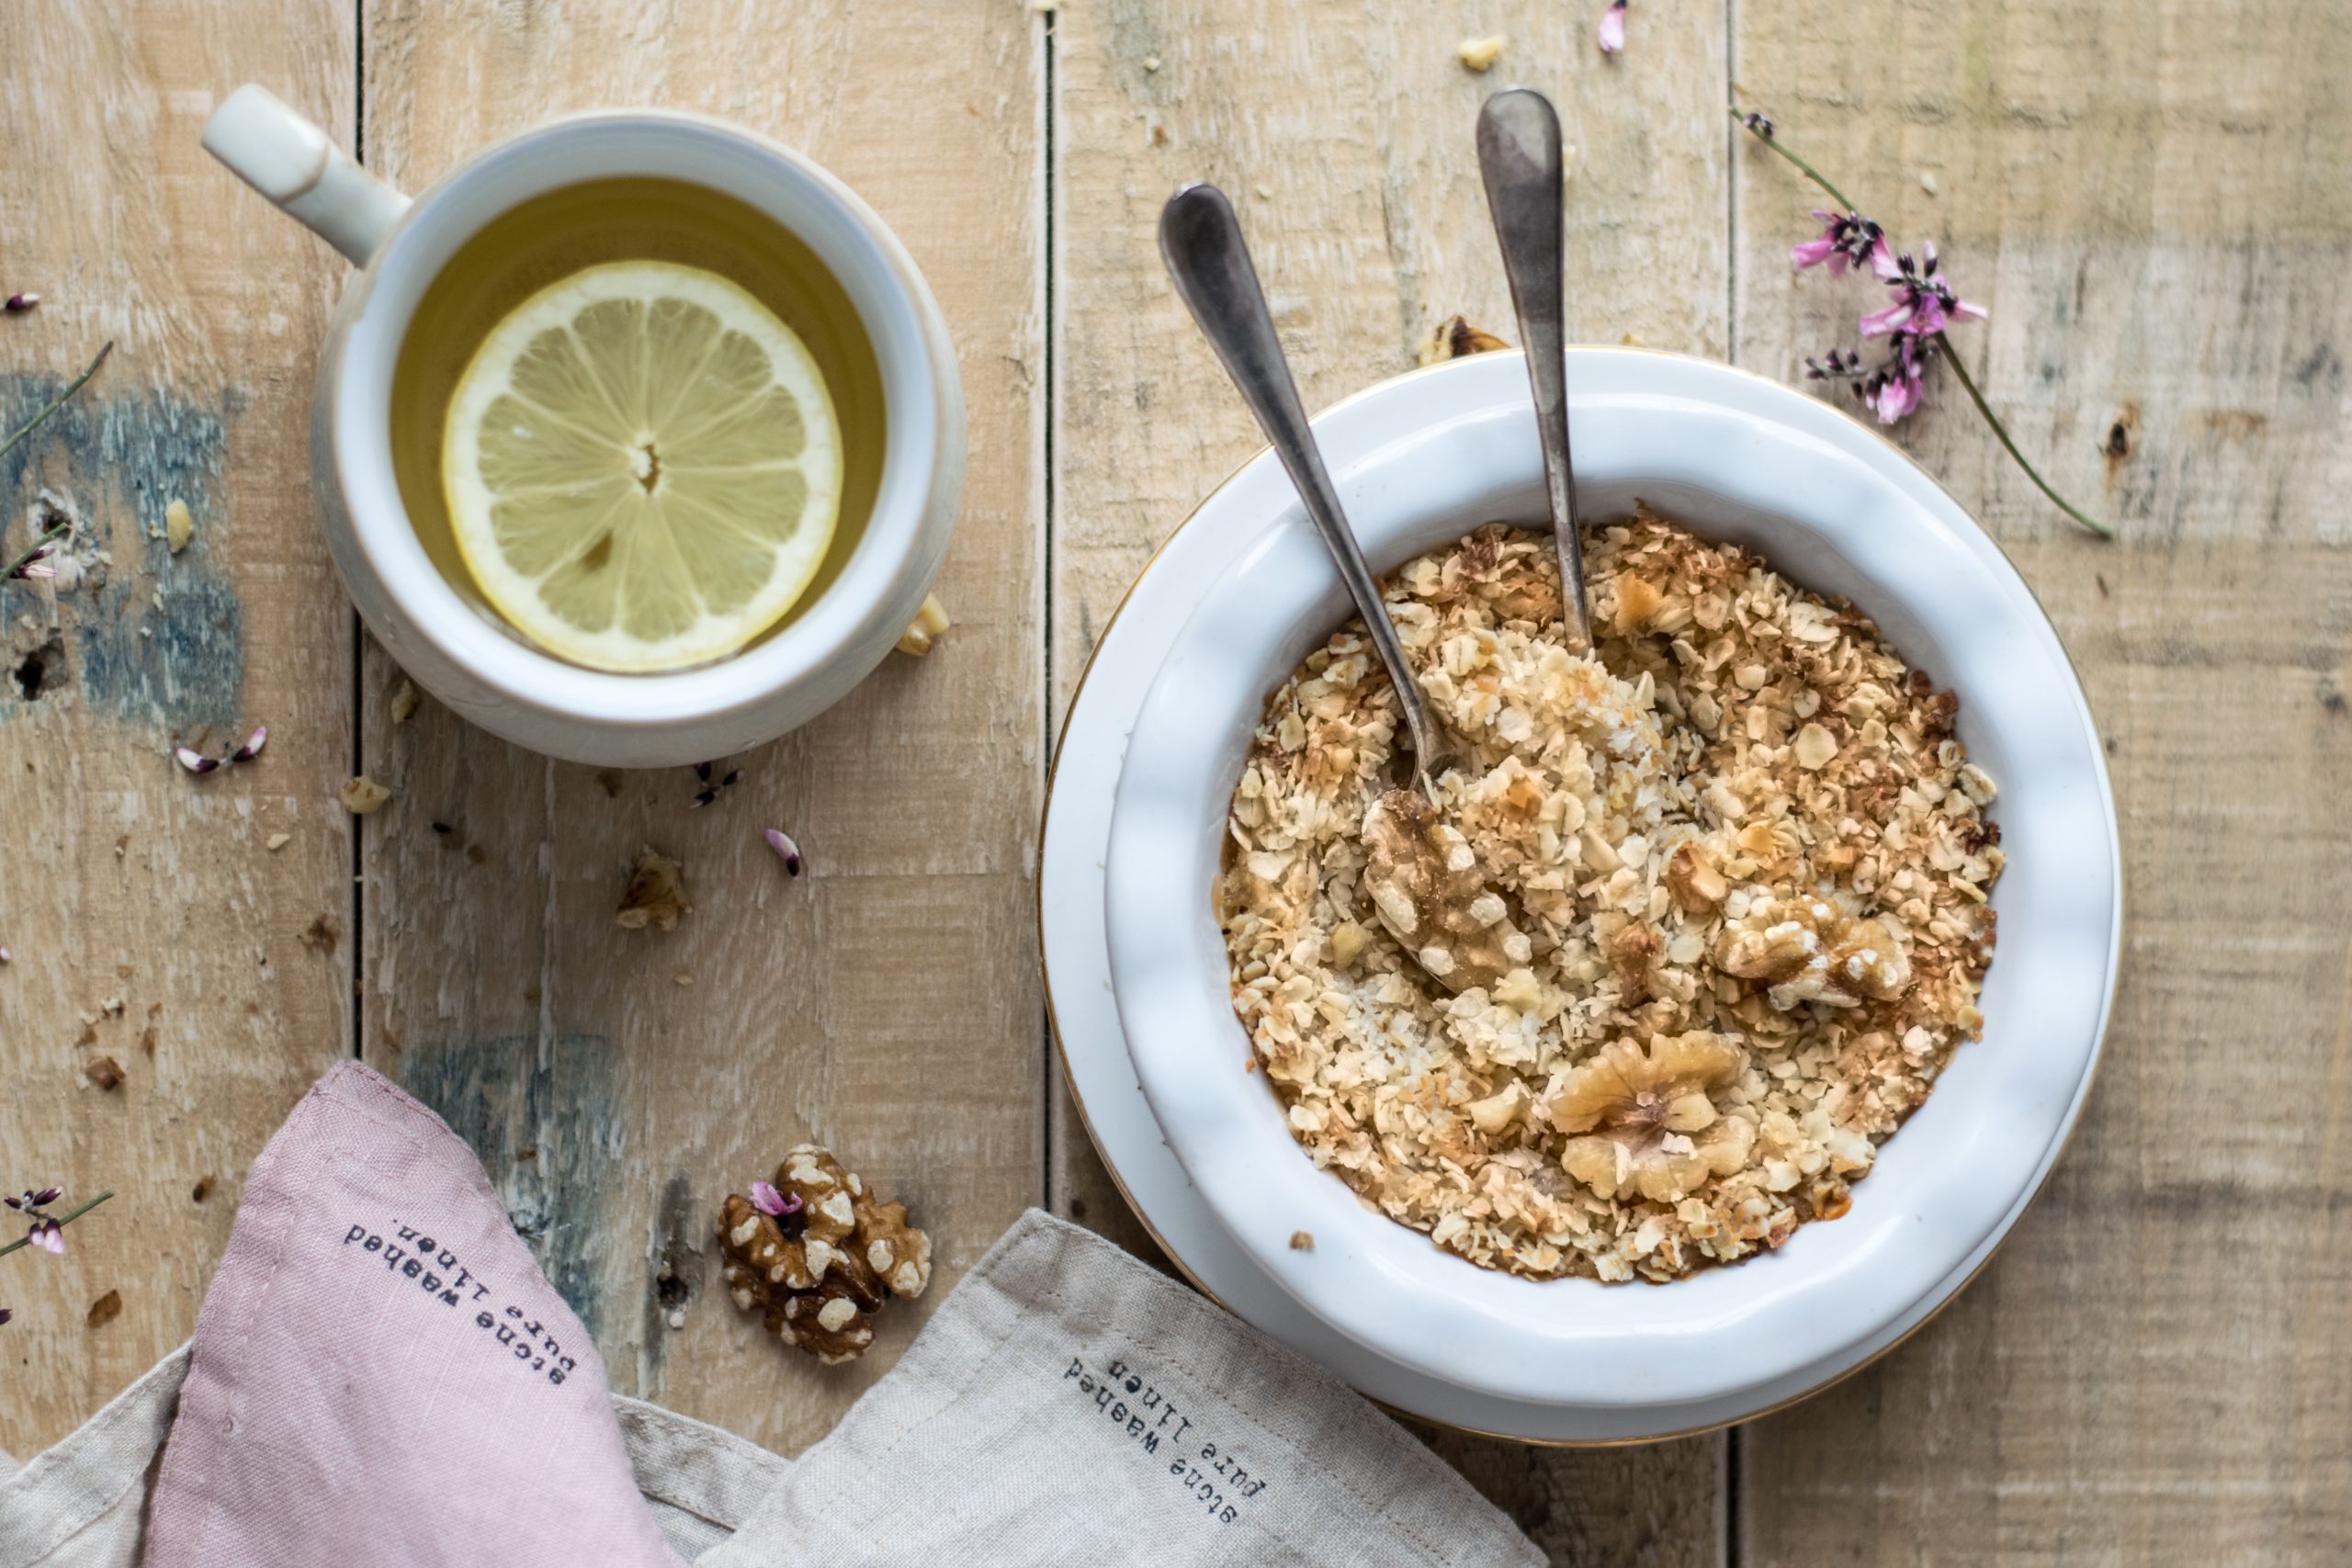 Whole grain oats, a popular breakfast grain